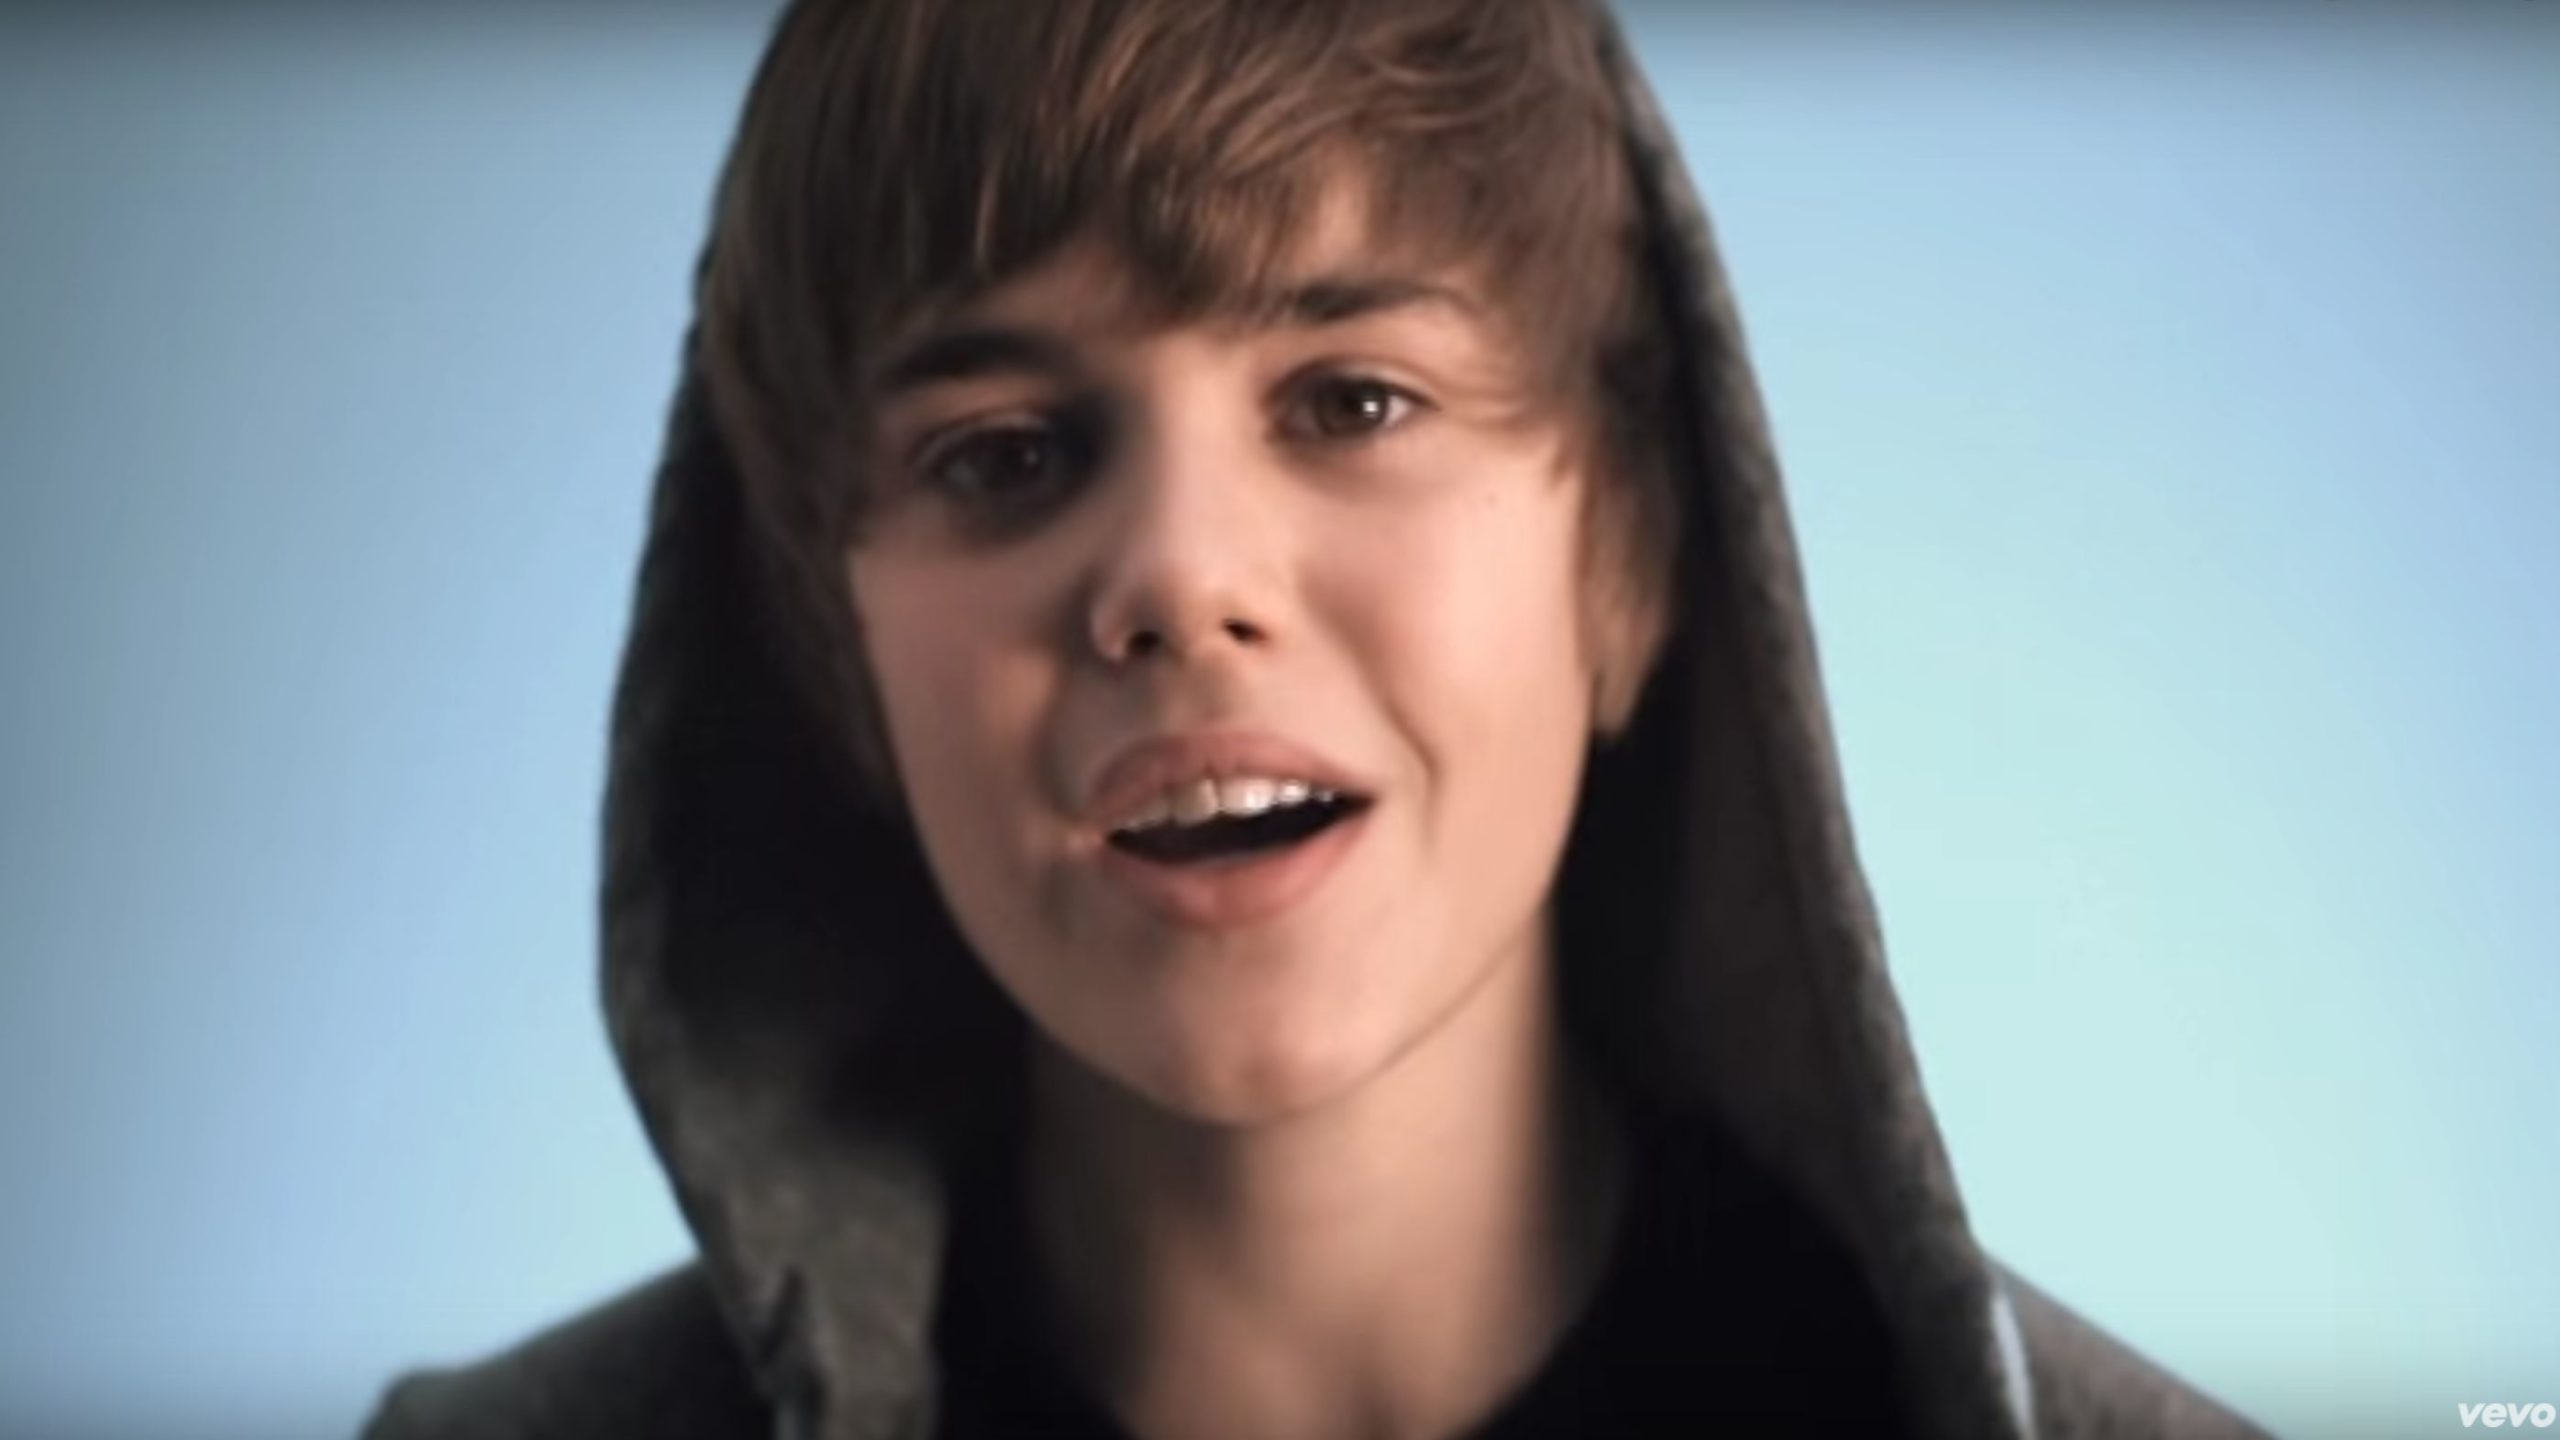 Há 10 anos, Justin Bieber lançava o álbum “My World” um dos maiores sucessos de sua carreira